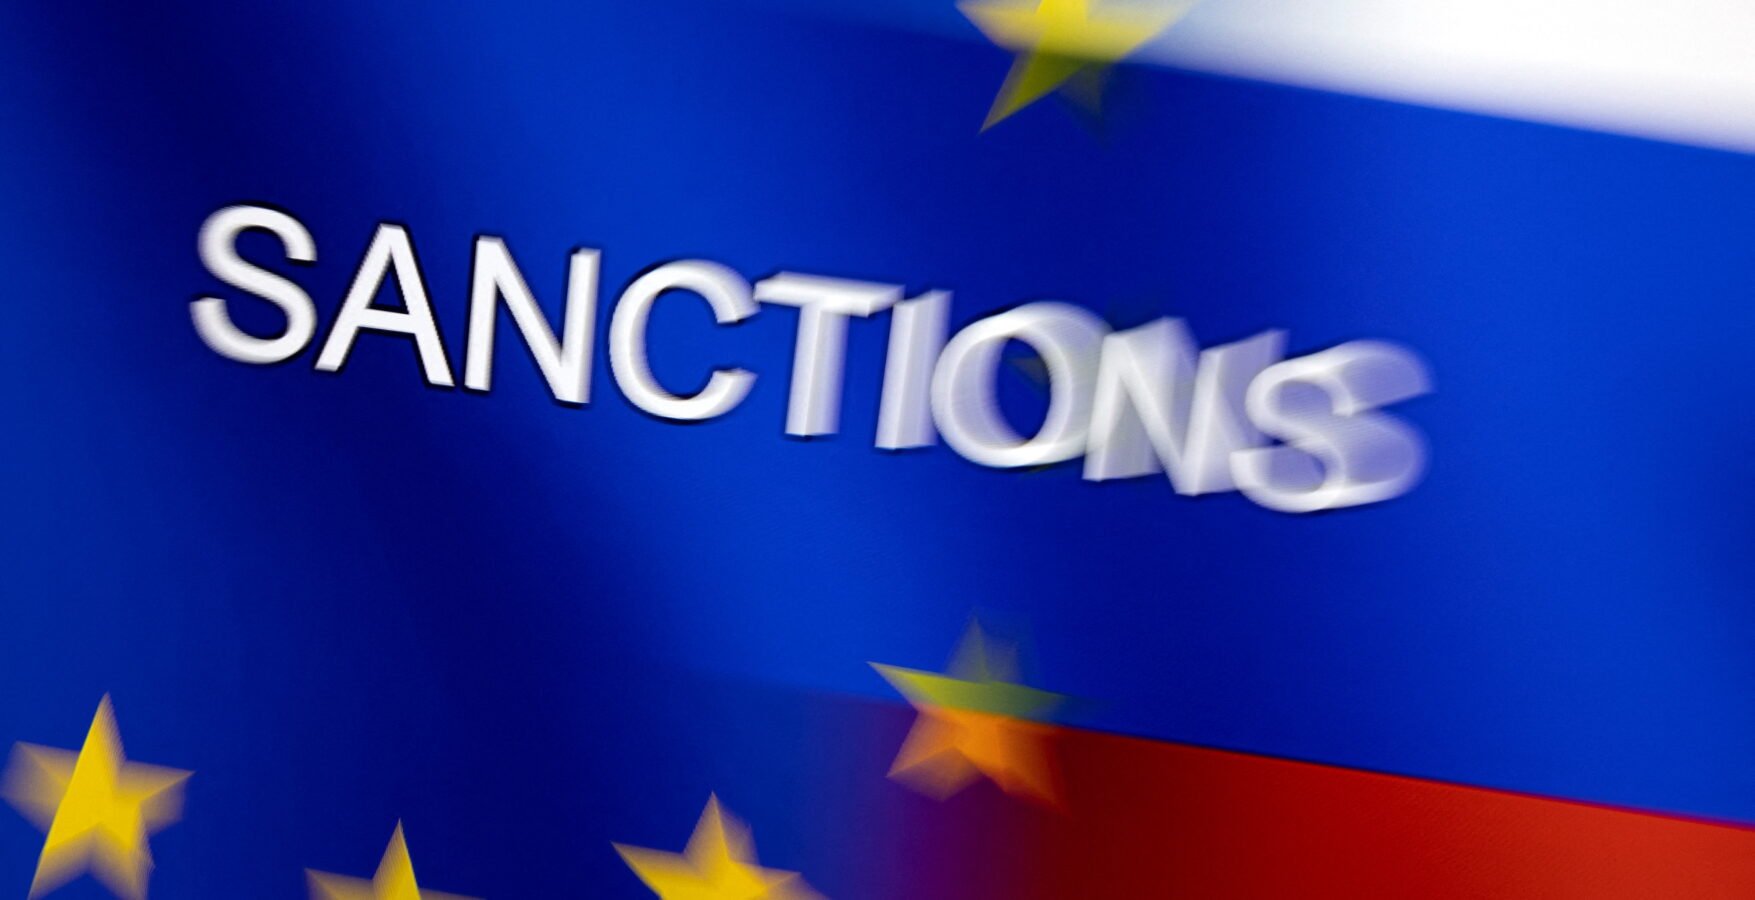 Нові санкції ЄС проти рф: заборона імпорту вугілля, обмеження для кораблів і операторів транспорту